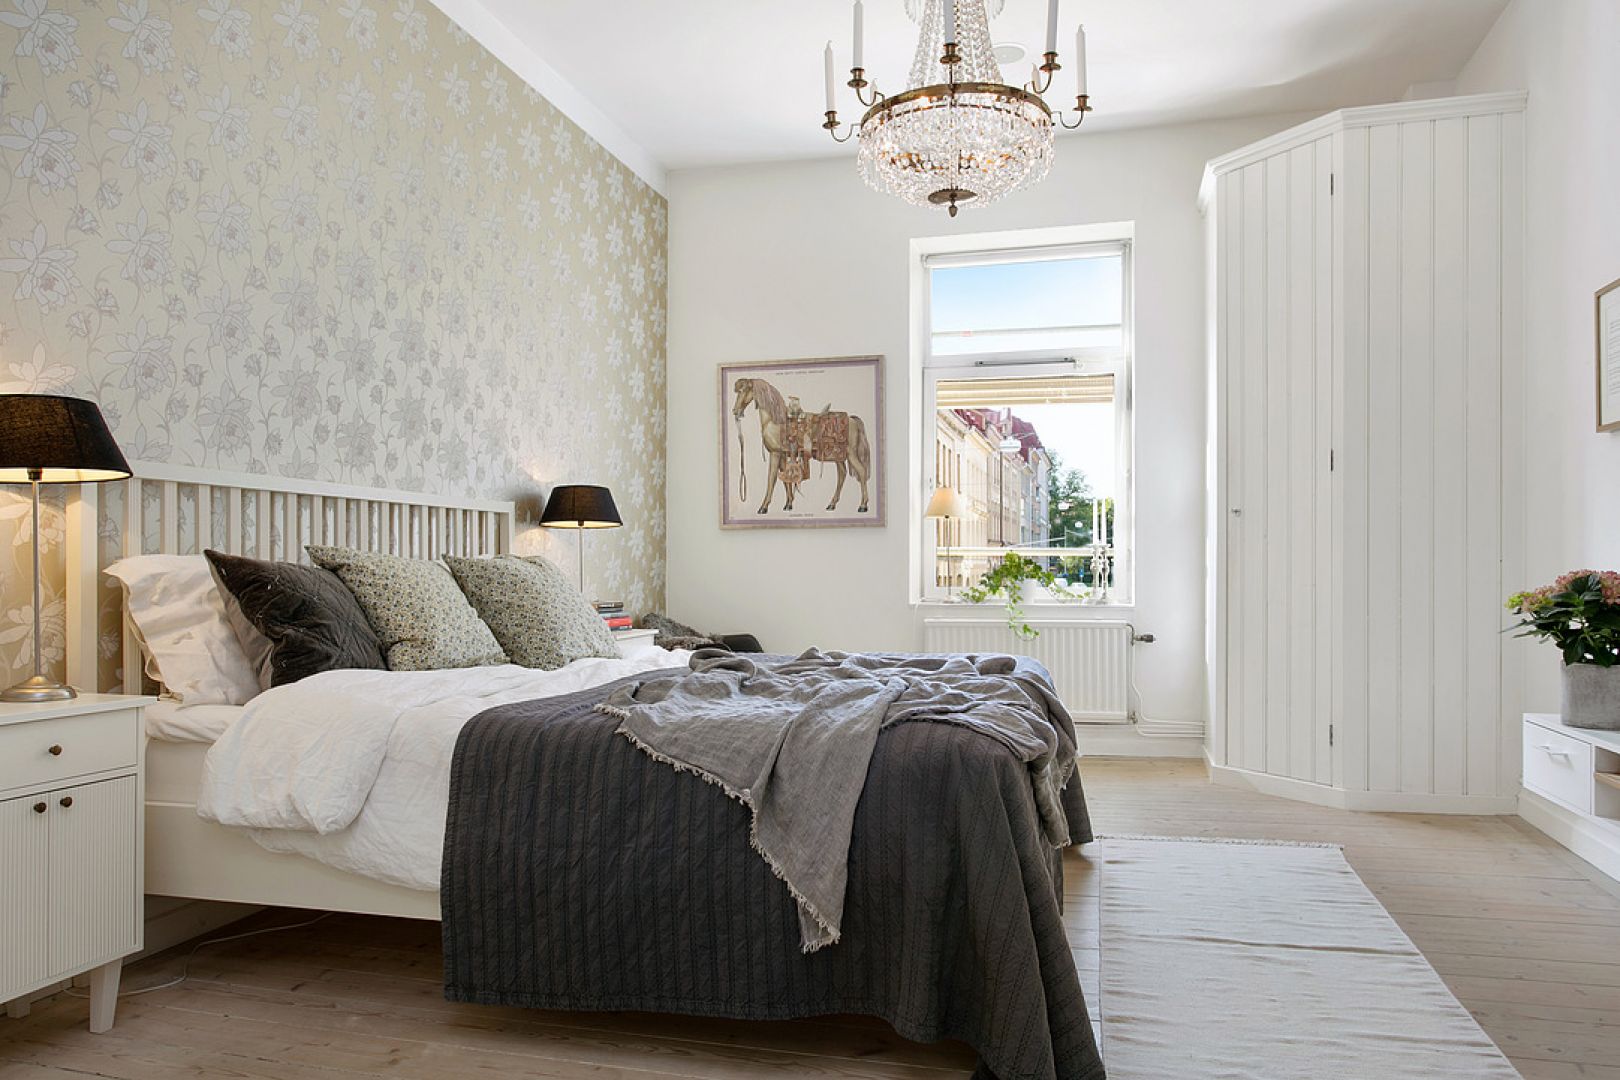 Ściana za łóżkiem to niezwykle ważny detal w skandynawskiej sypialni. Można ją wykończyć ciekawą tapetą, dzięki czemu białe wnętrze nabierze charakteru. Fot. Alvem Makleri